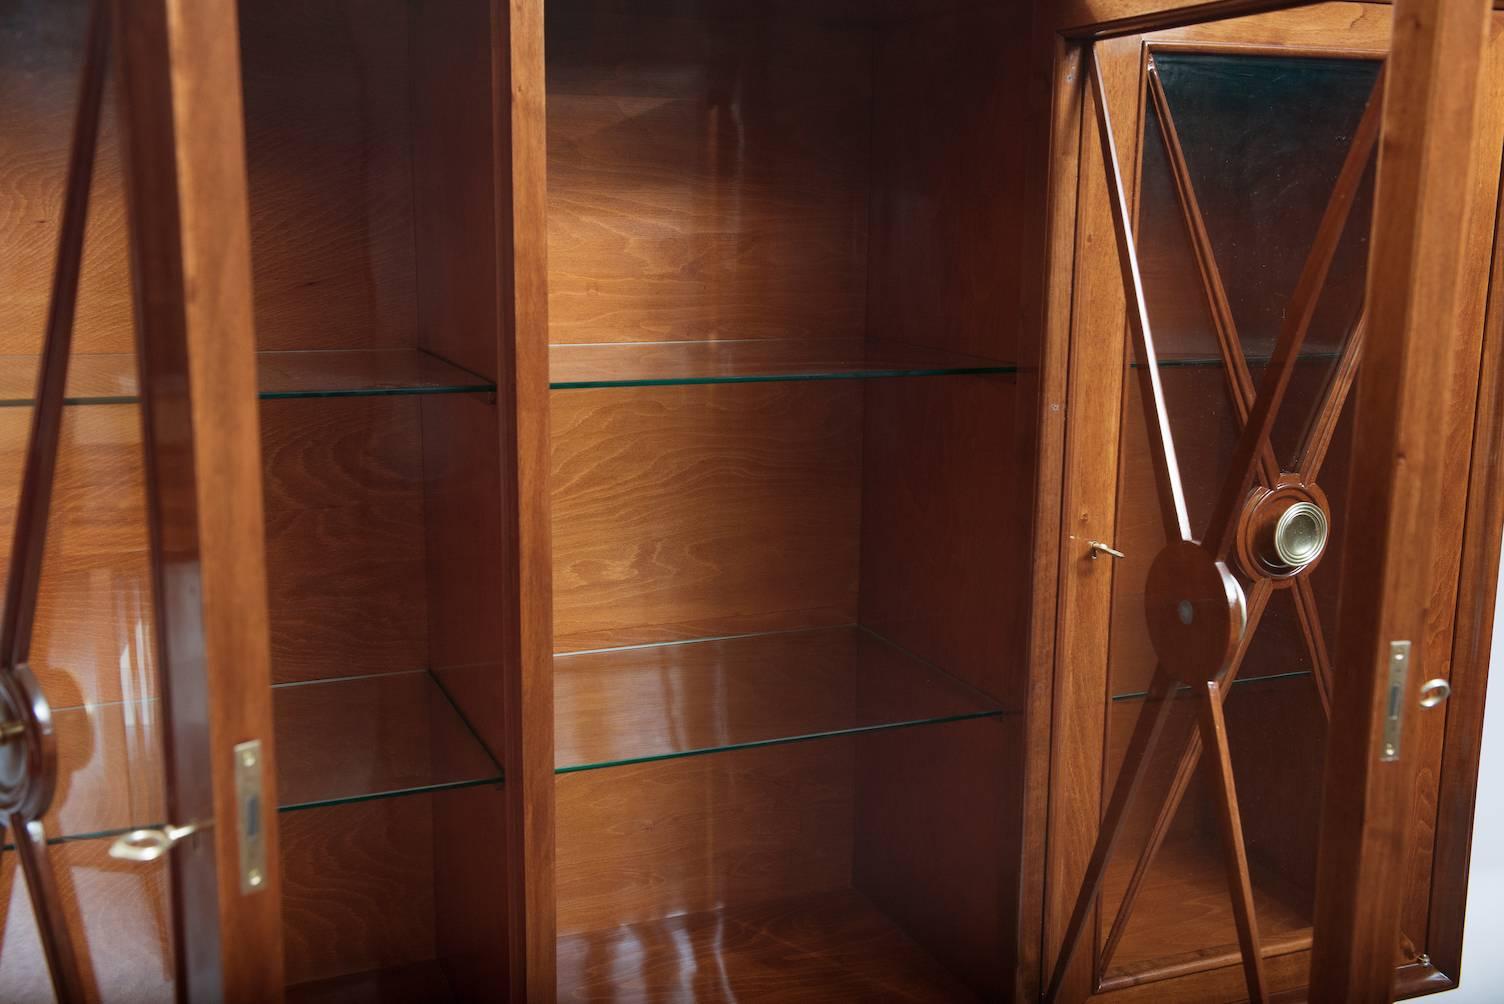 Walnut display cabinet with brass door handles.